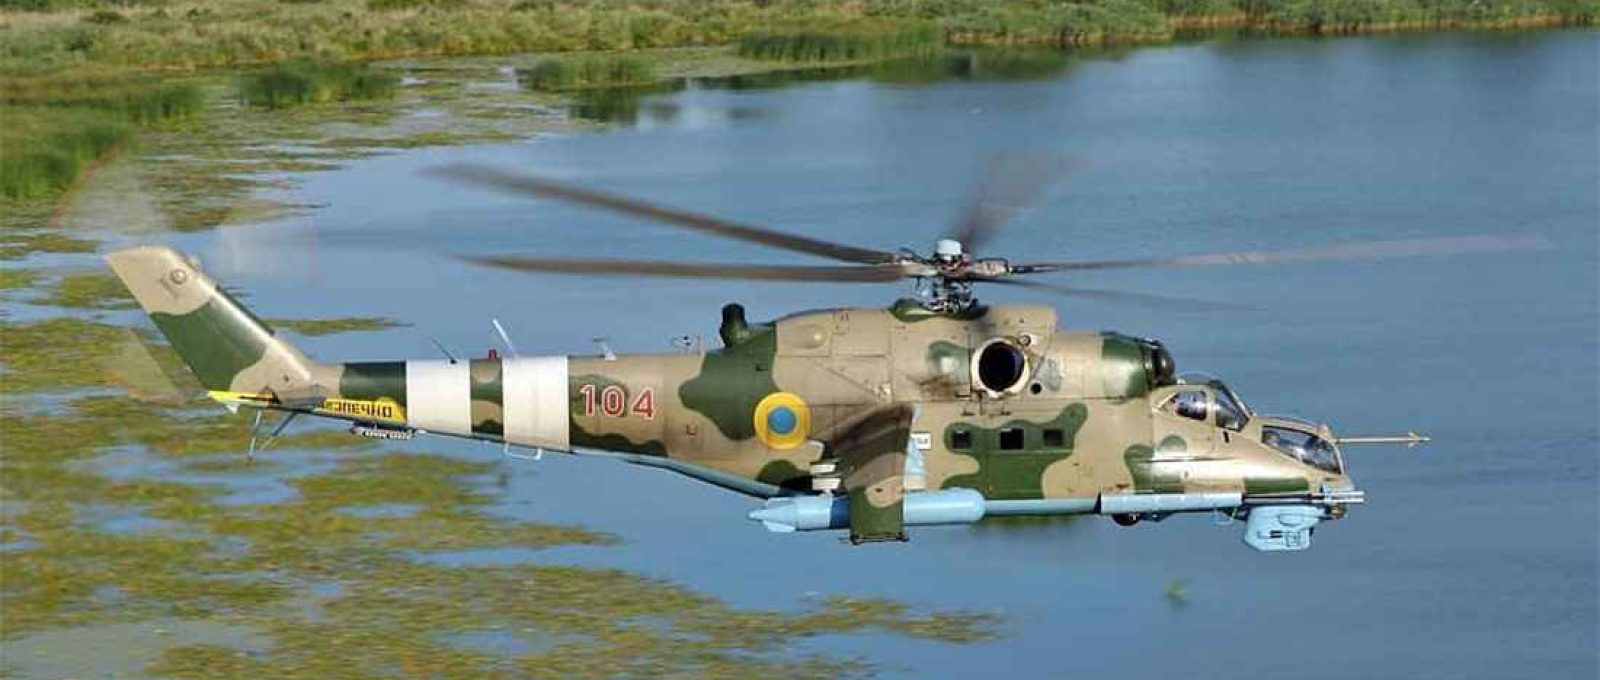 Helicóptero Mi-24 da aviação do Exército ucraniano, do tipo que teria sido empregado no ataque às instalações russas em Belgorod (Tommy Pfeiffer/MilitaryAviationInUa/Twitter).